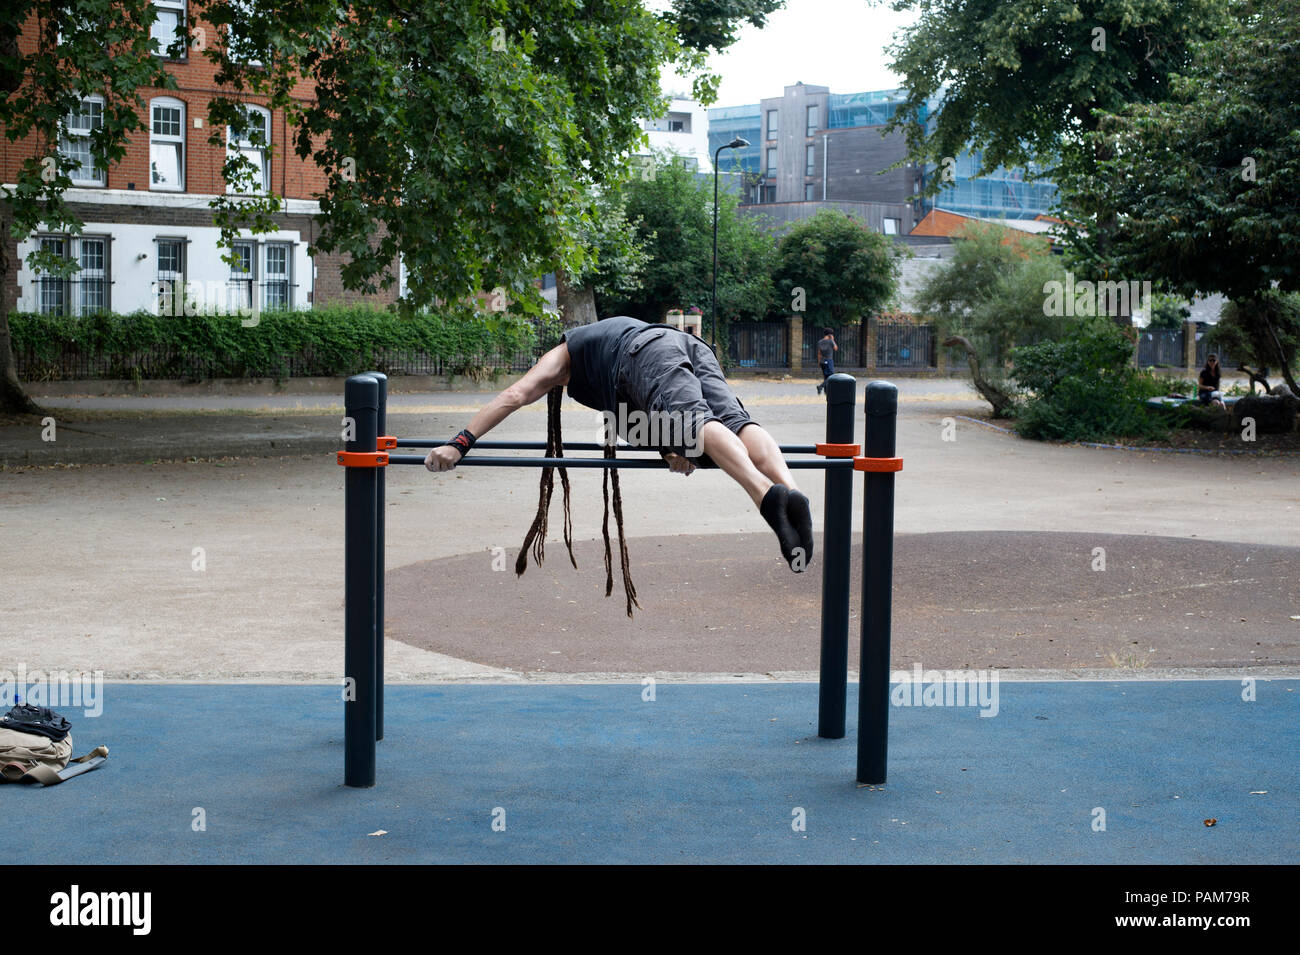 Hackney, London. Junger Mann mit Dreadlocks hat ups auf Parallele Stangen schieben Stockfoto